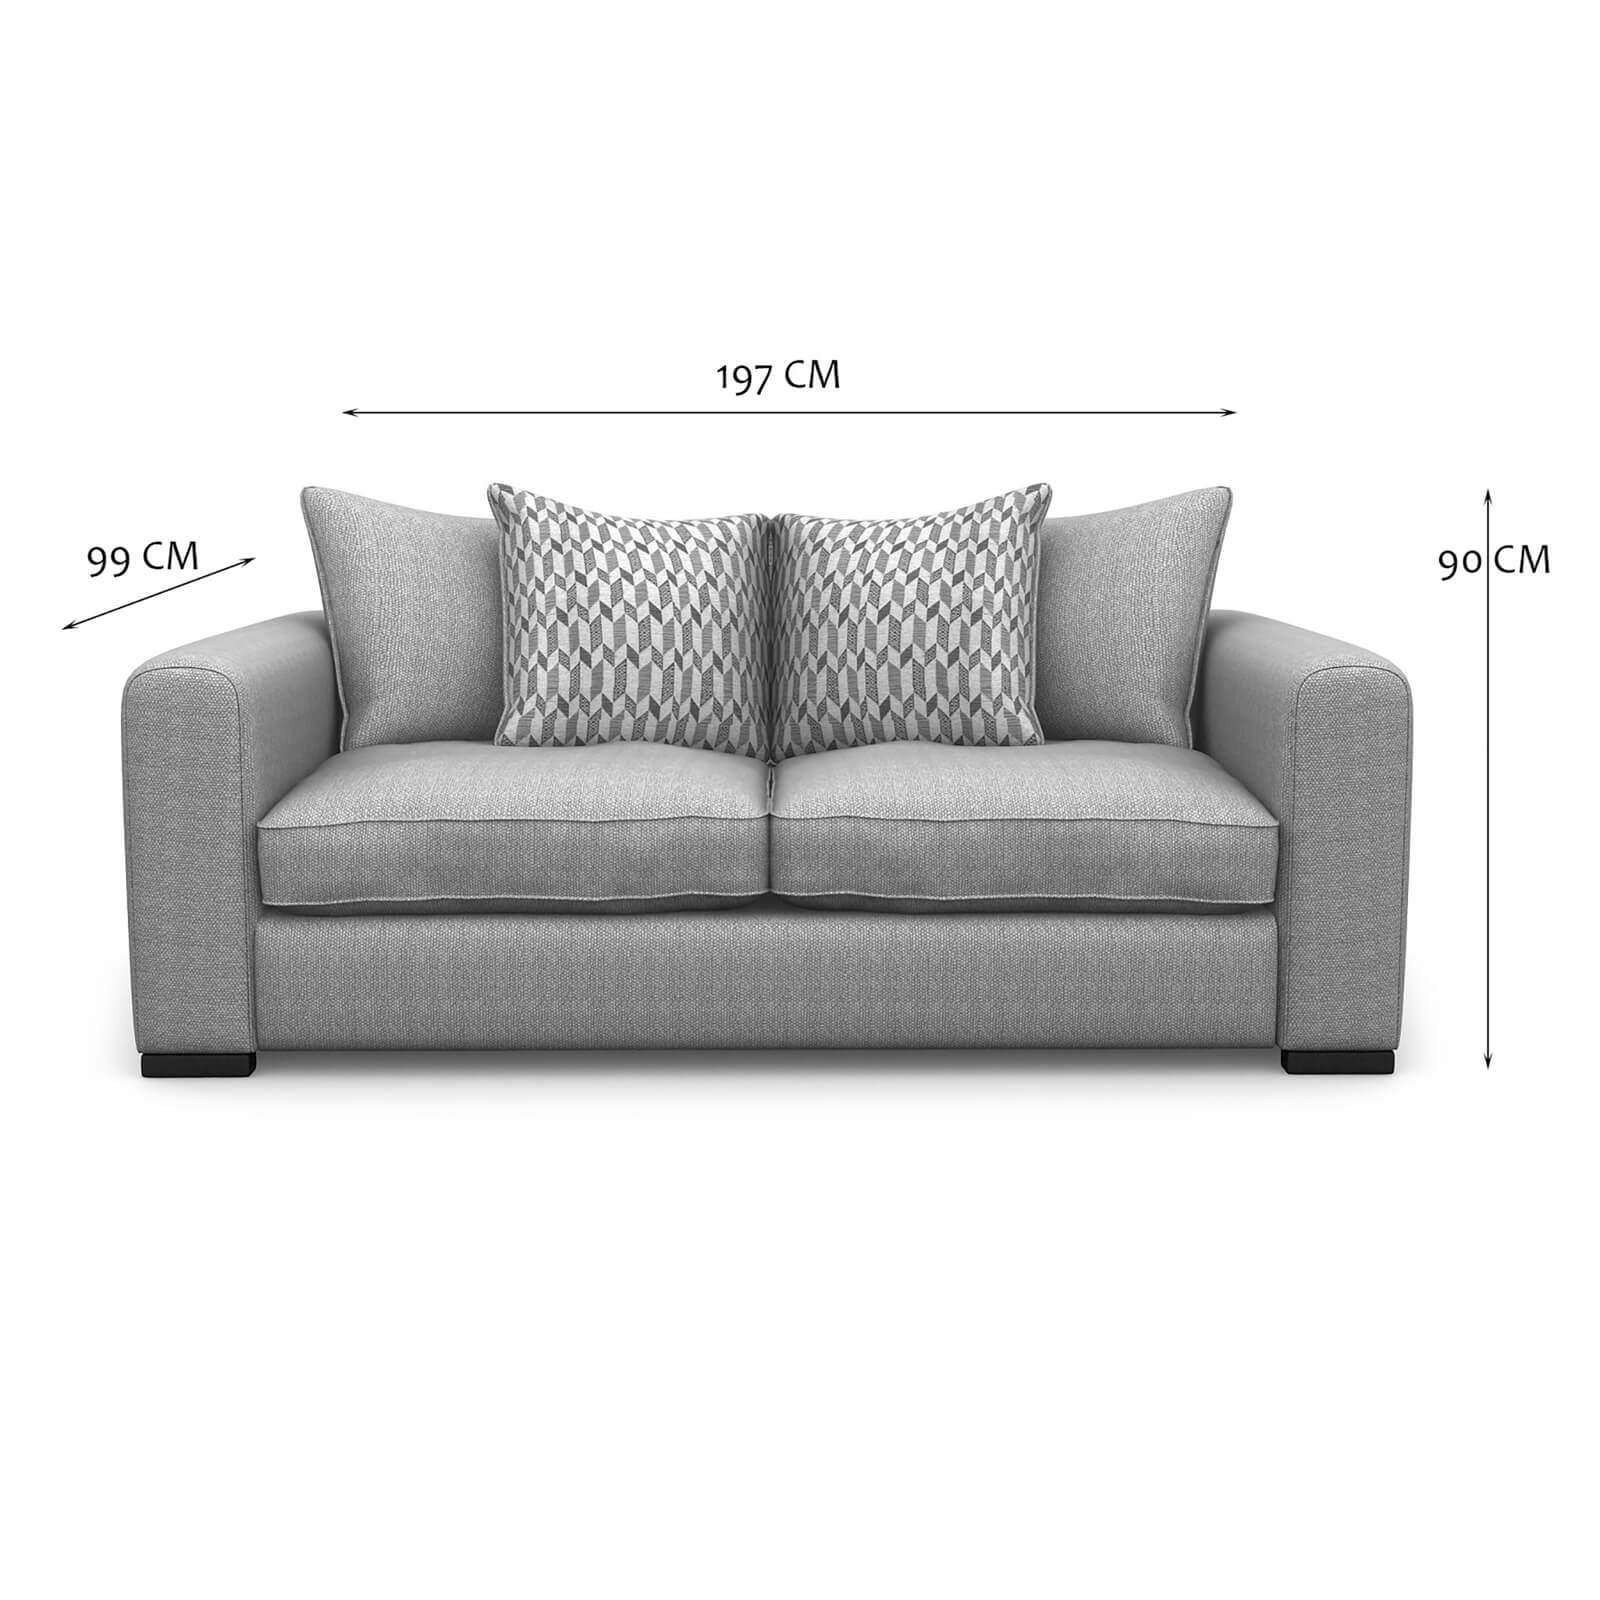 Lewis 2 Seater Sofa - Natural